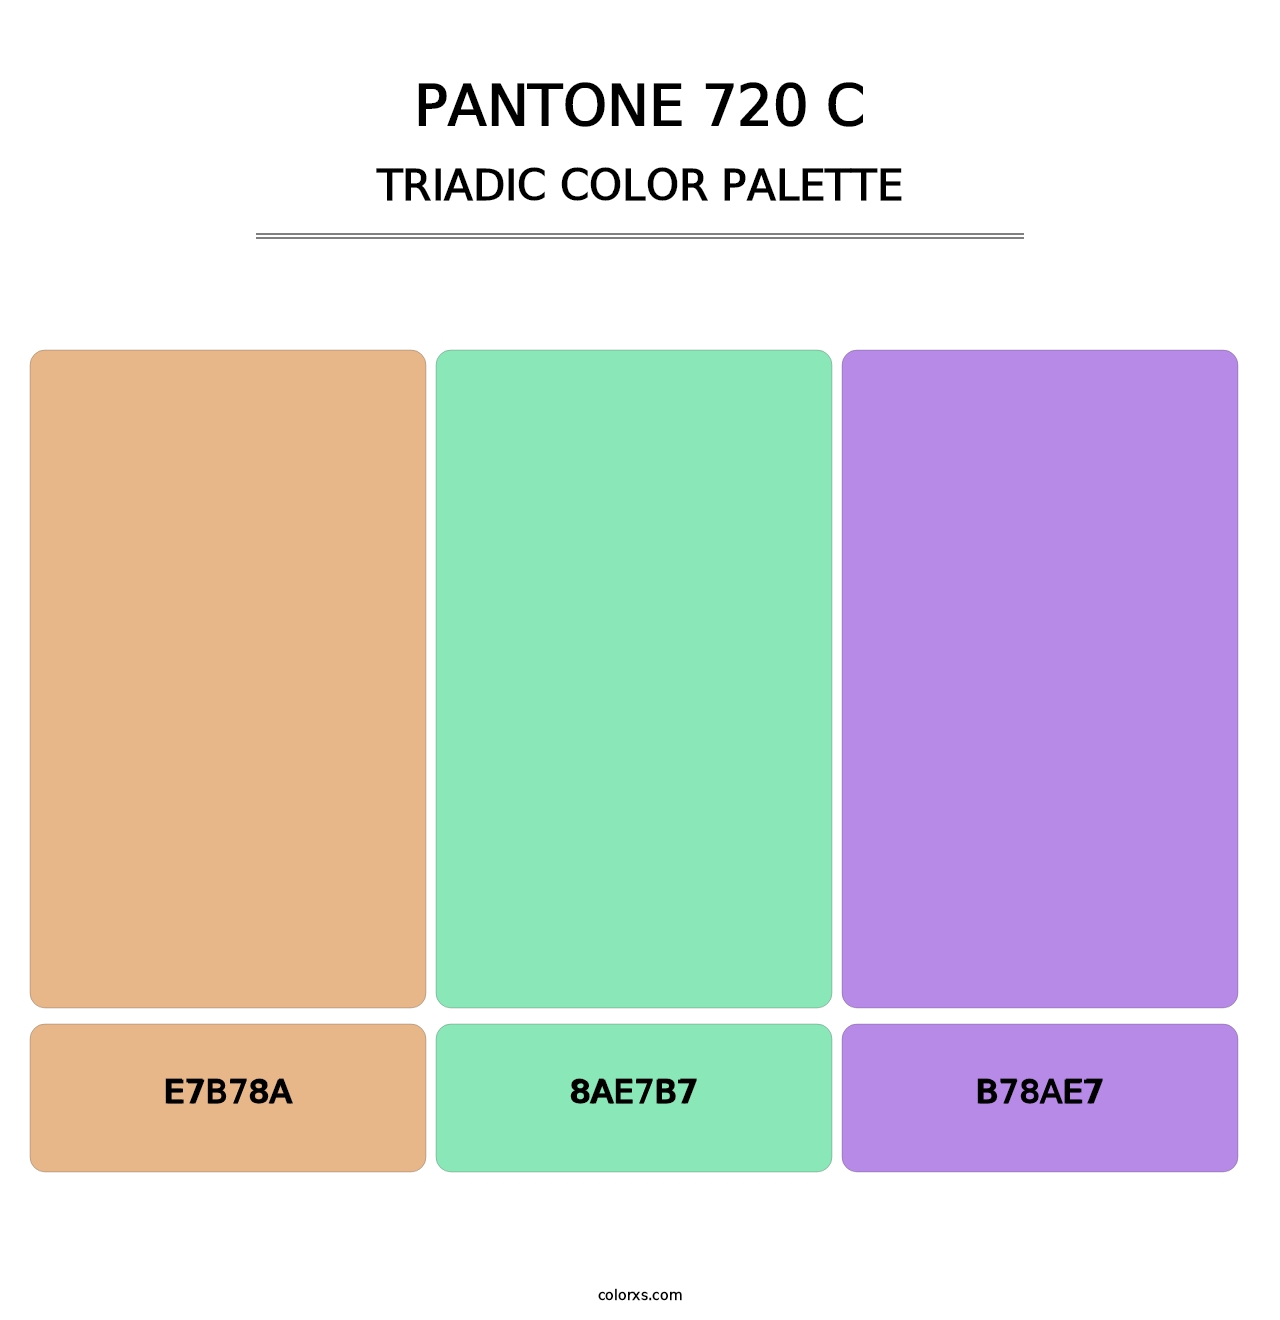 PANTONE 720 C - Triadic Color Palette